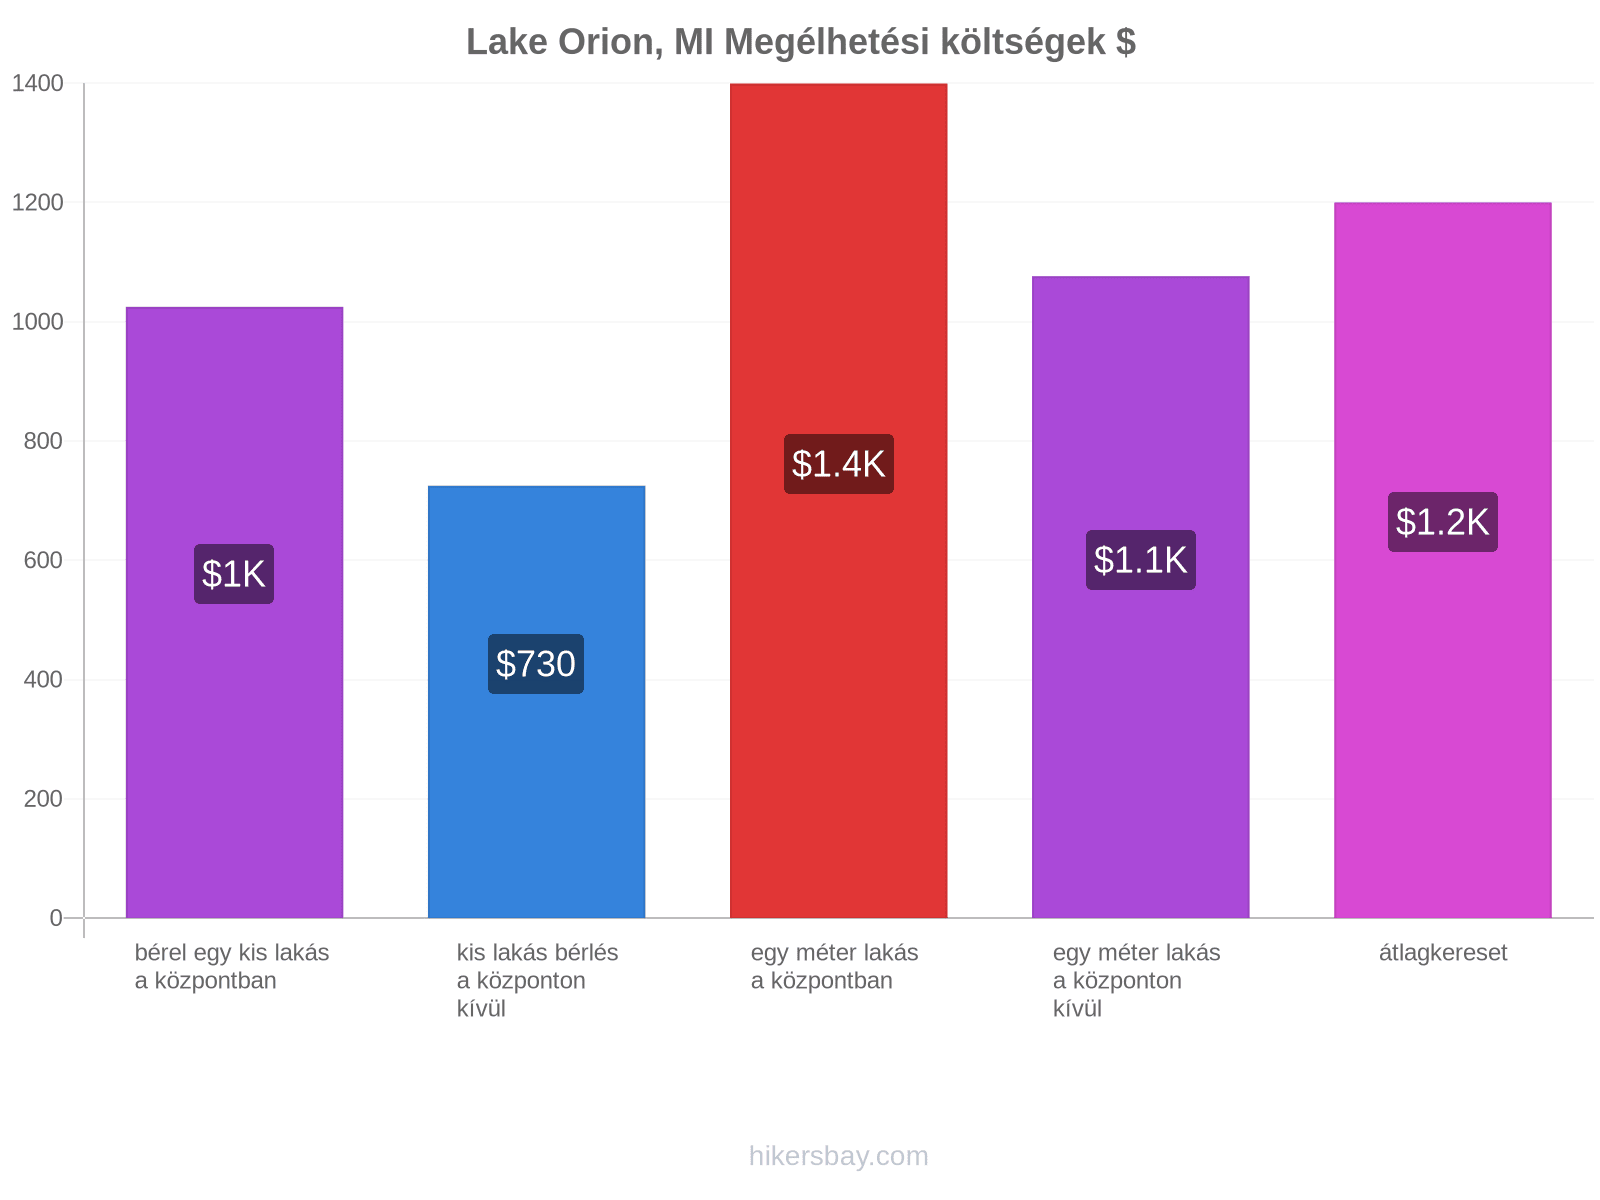 Lake Orion, MI megélhetési költségek hikersbay.com